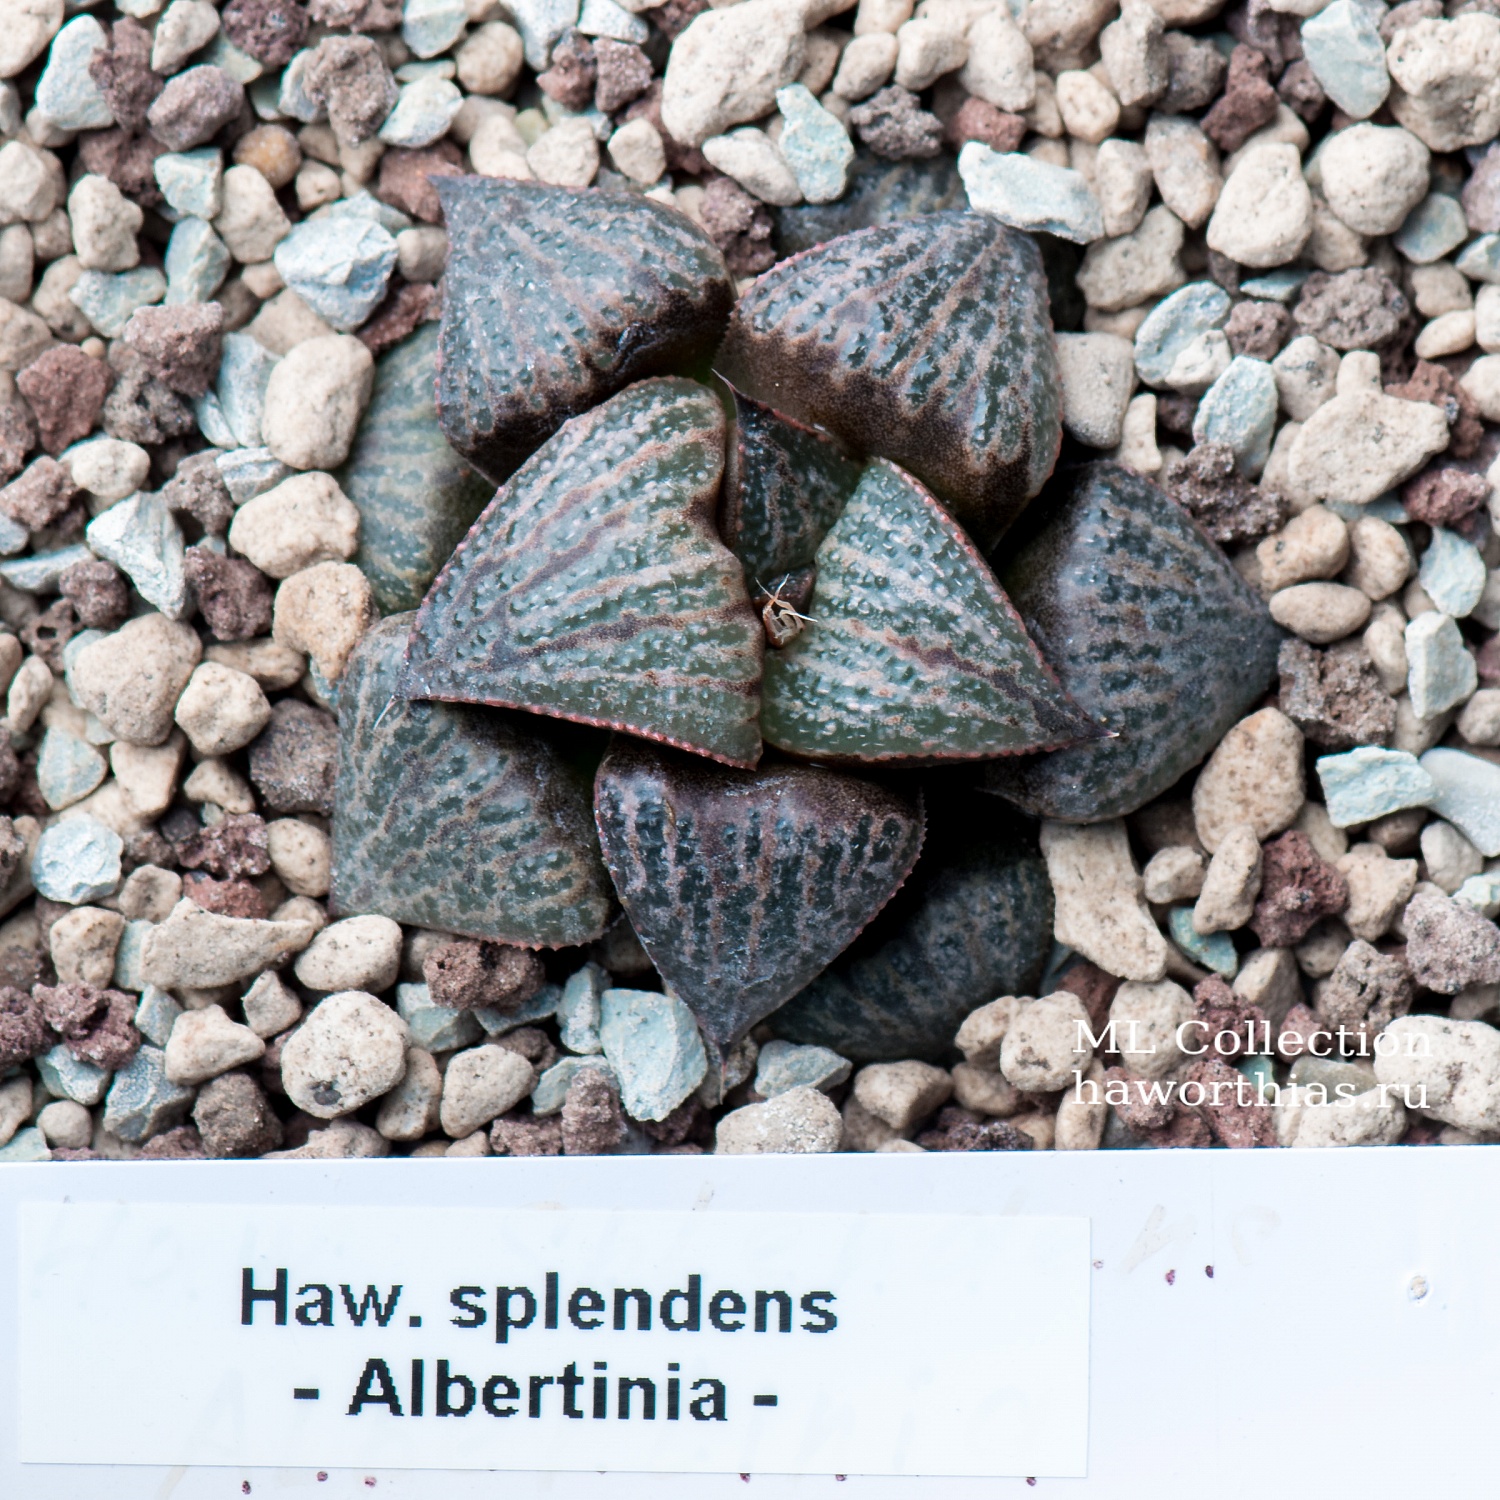 Haworthia splendens - Частная коллекция суккулентов ML Collection